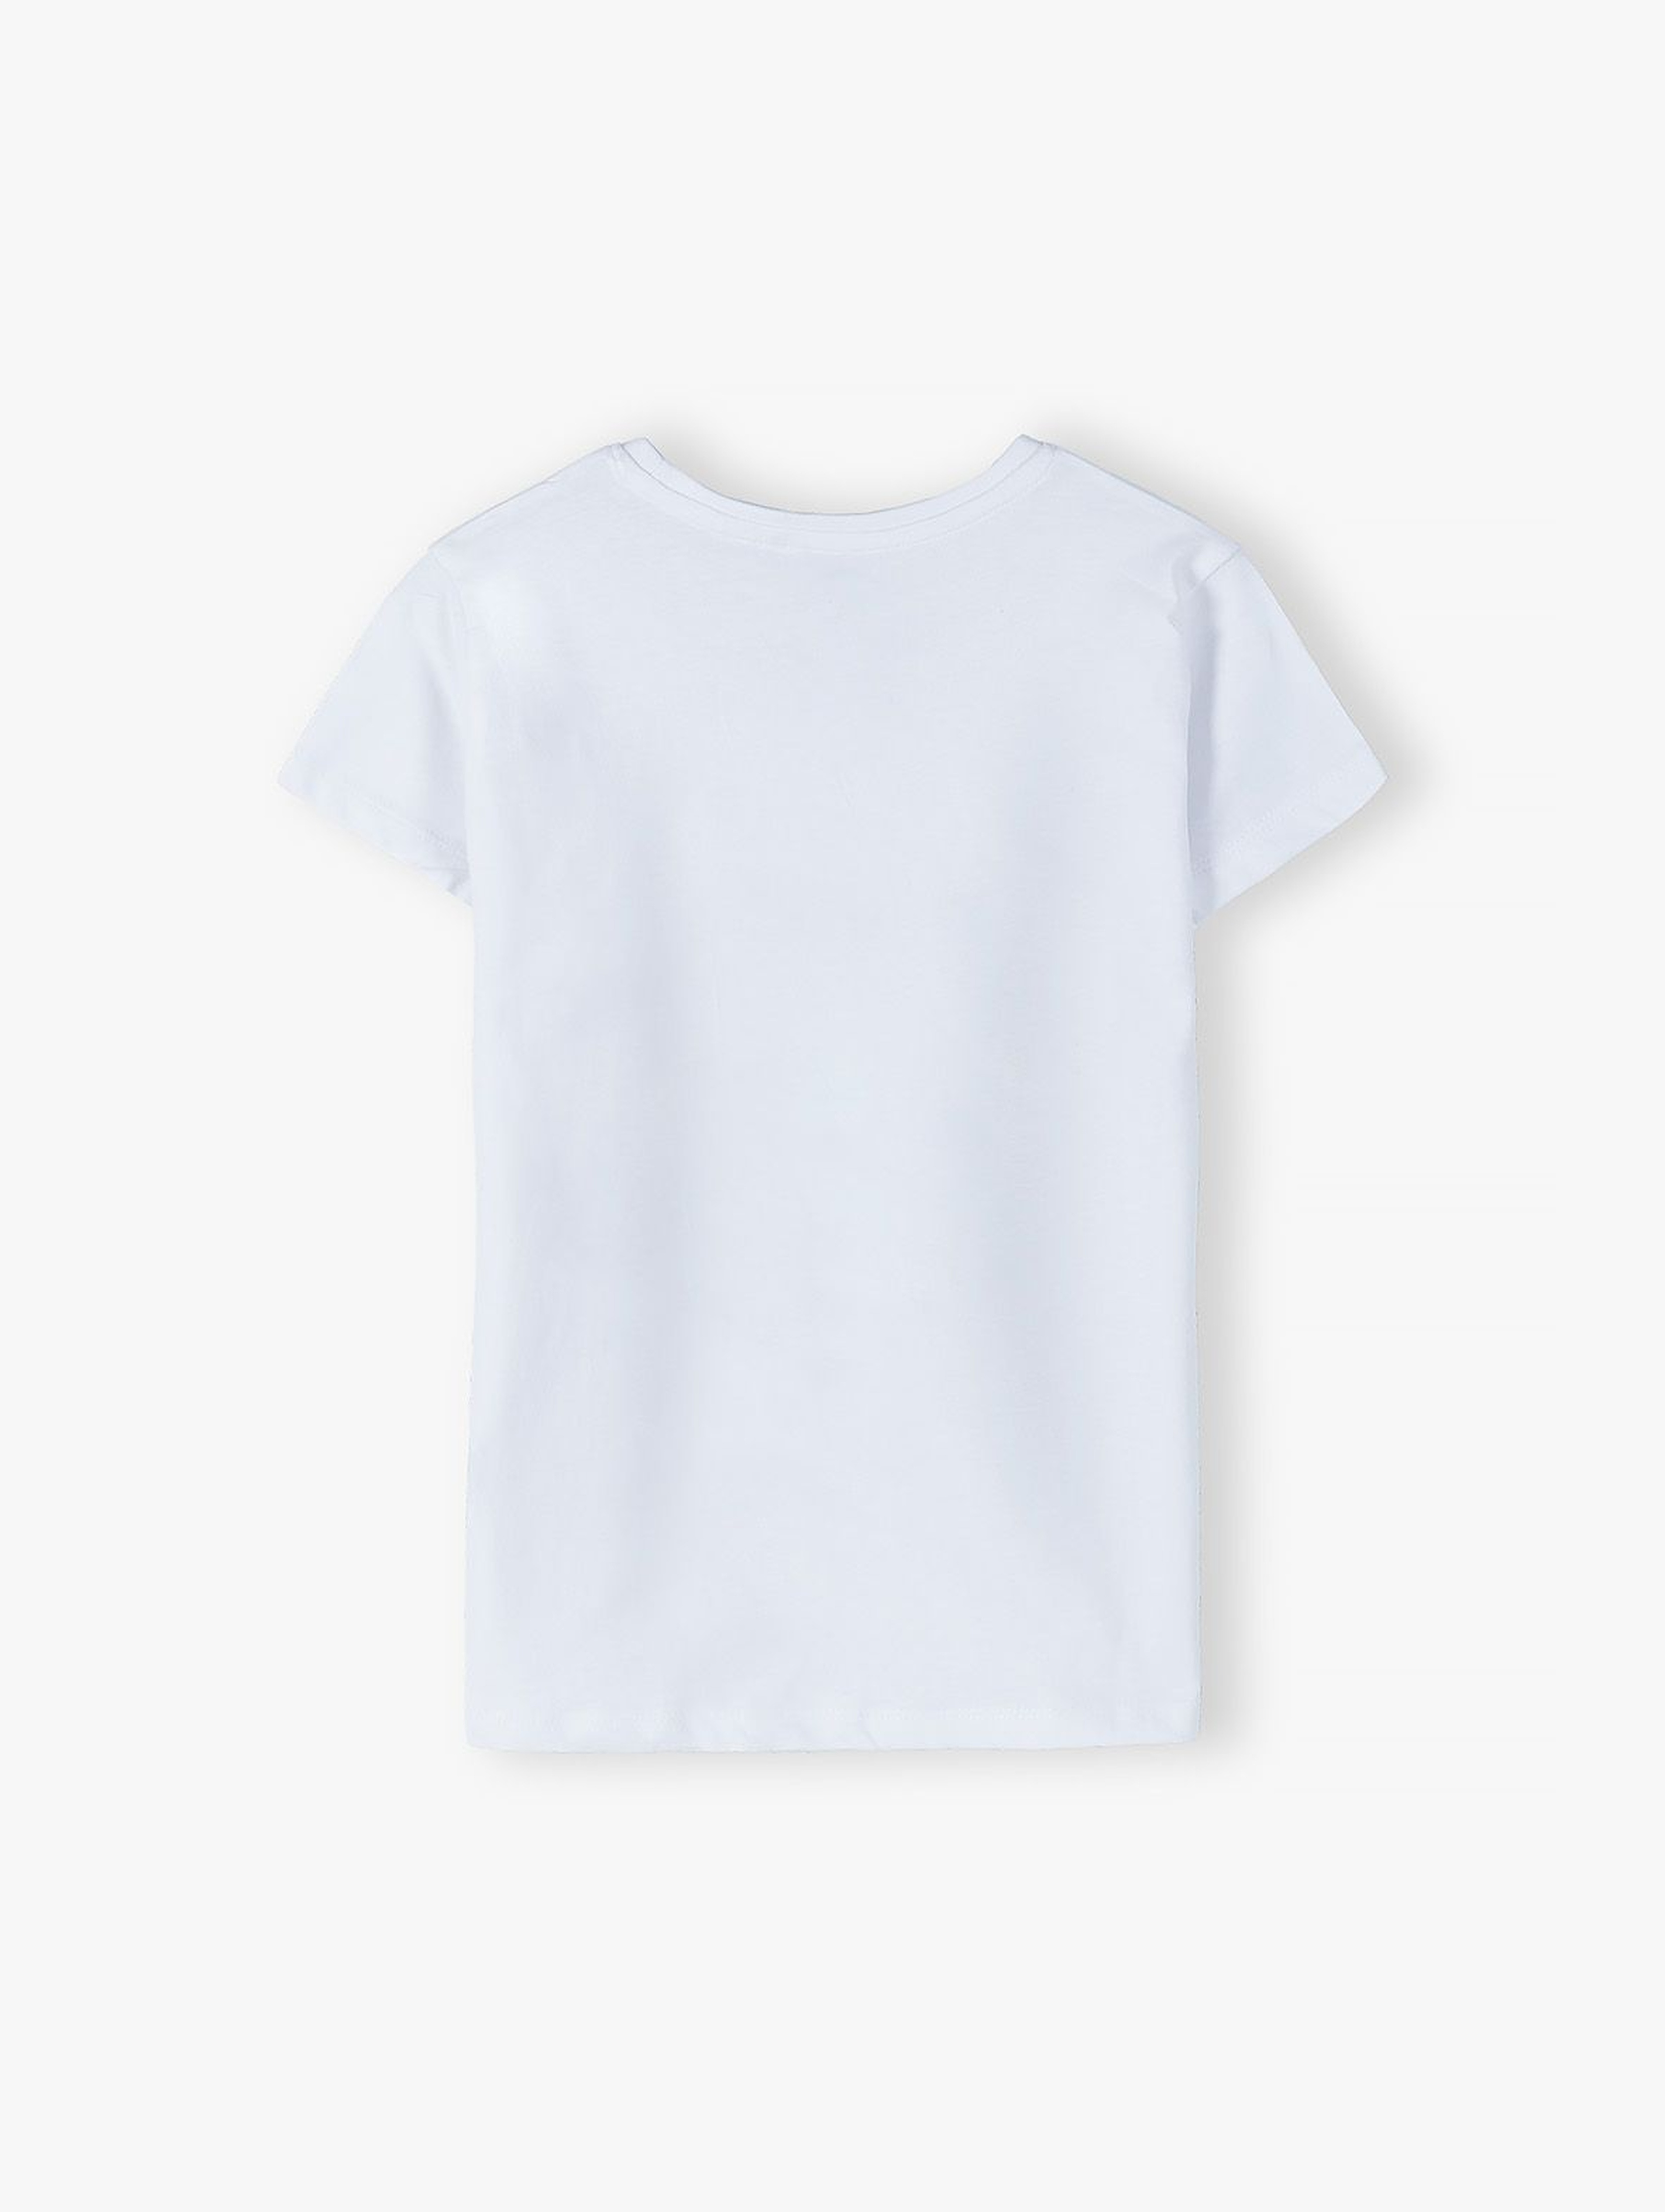 Bawełniany biały T- shirt damski z kotem- ubrania dla całej rodziny